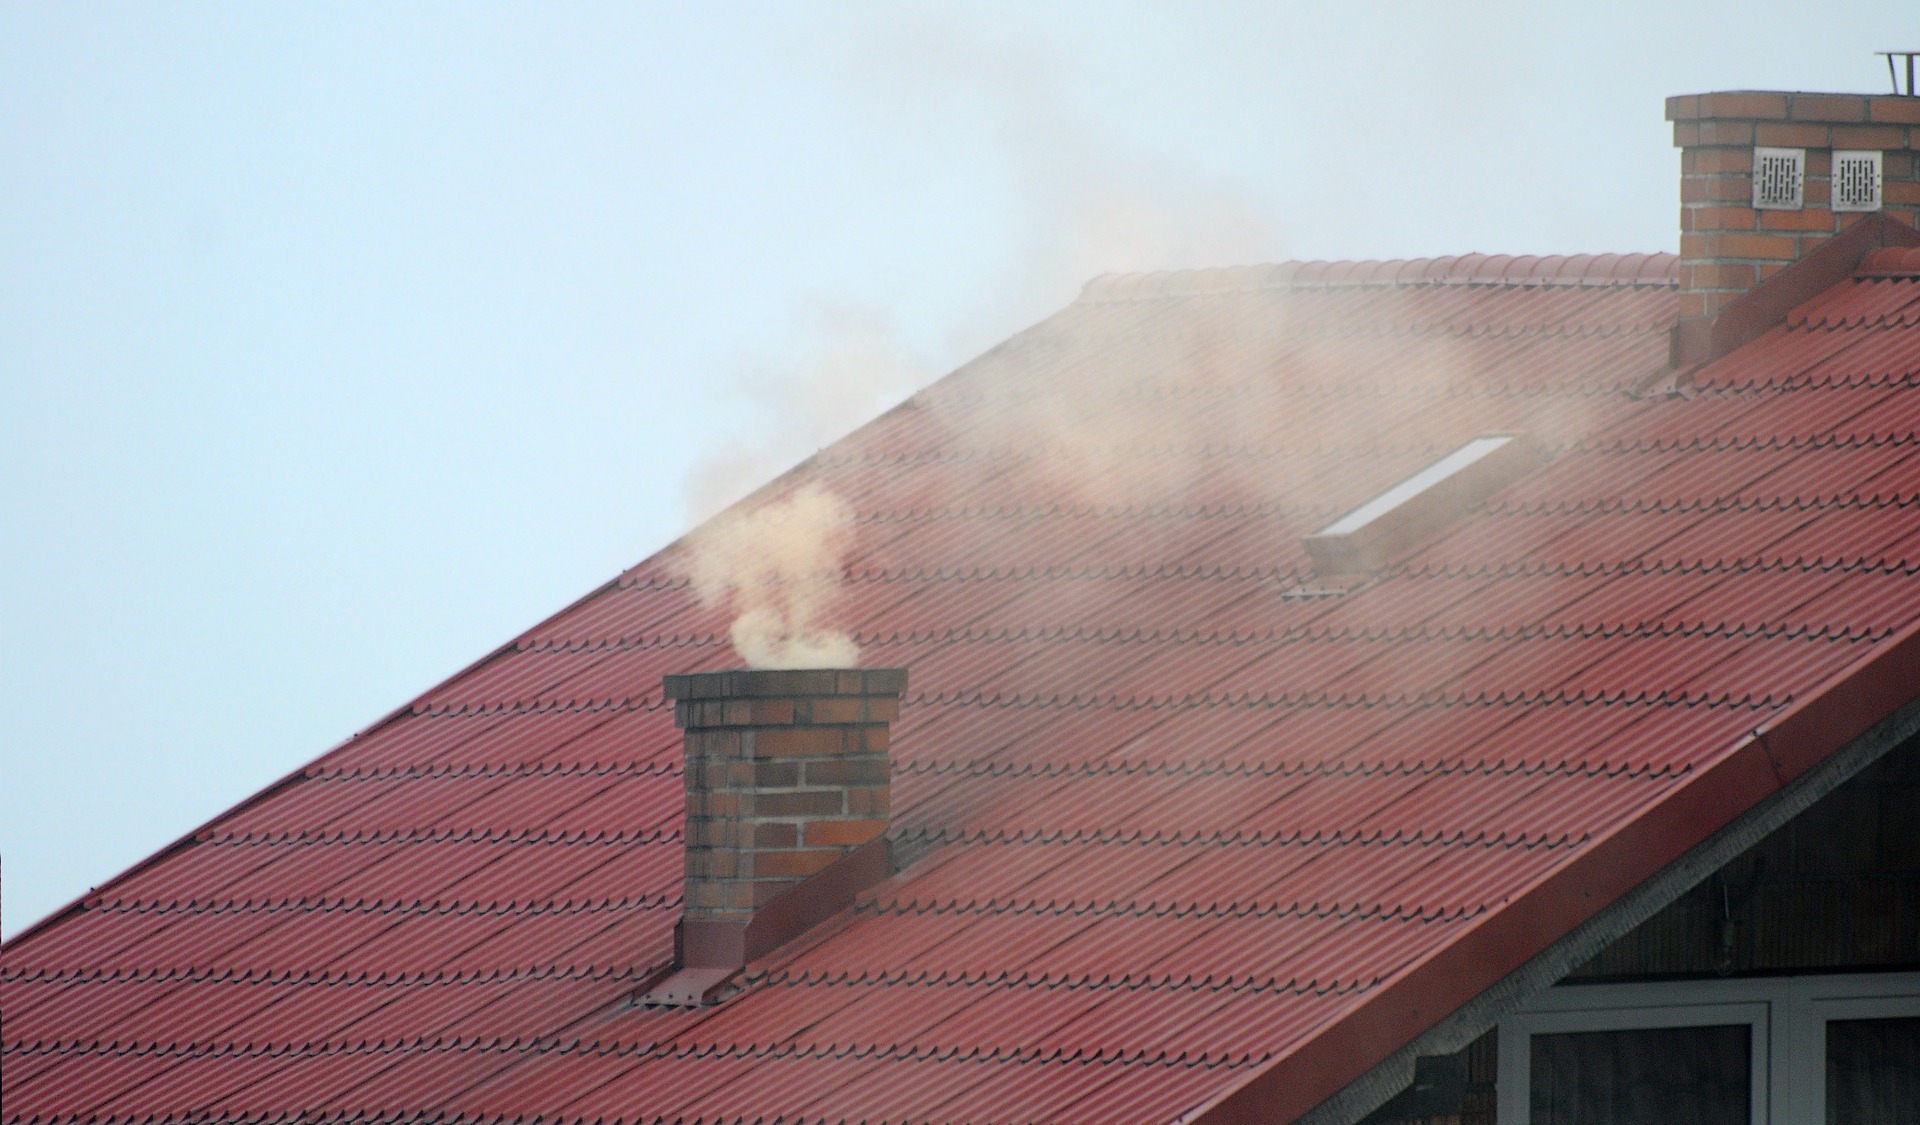 Zdjęcie przedstawia czerwony dach na budynku. Na dachu znajduje się komin, z którego wydobywa się dym. Zdjęcie: Pixabay